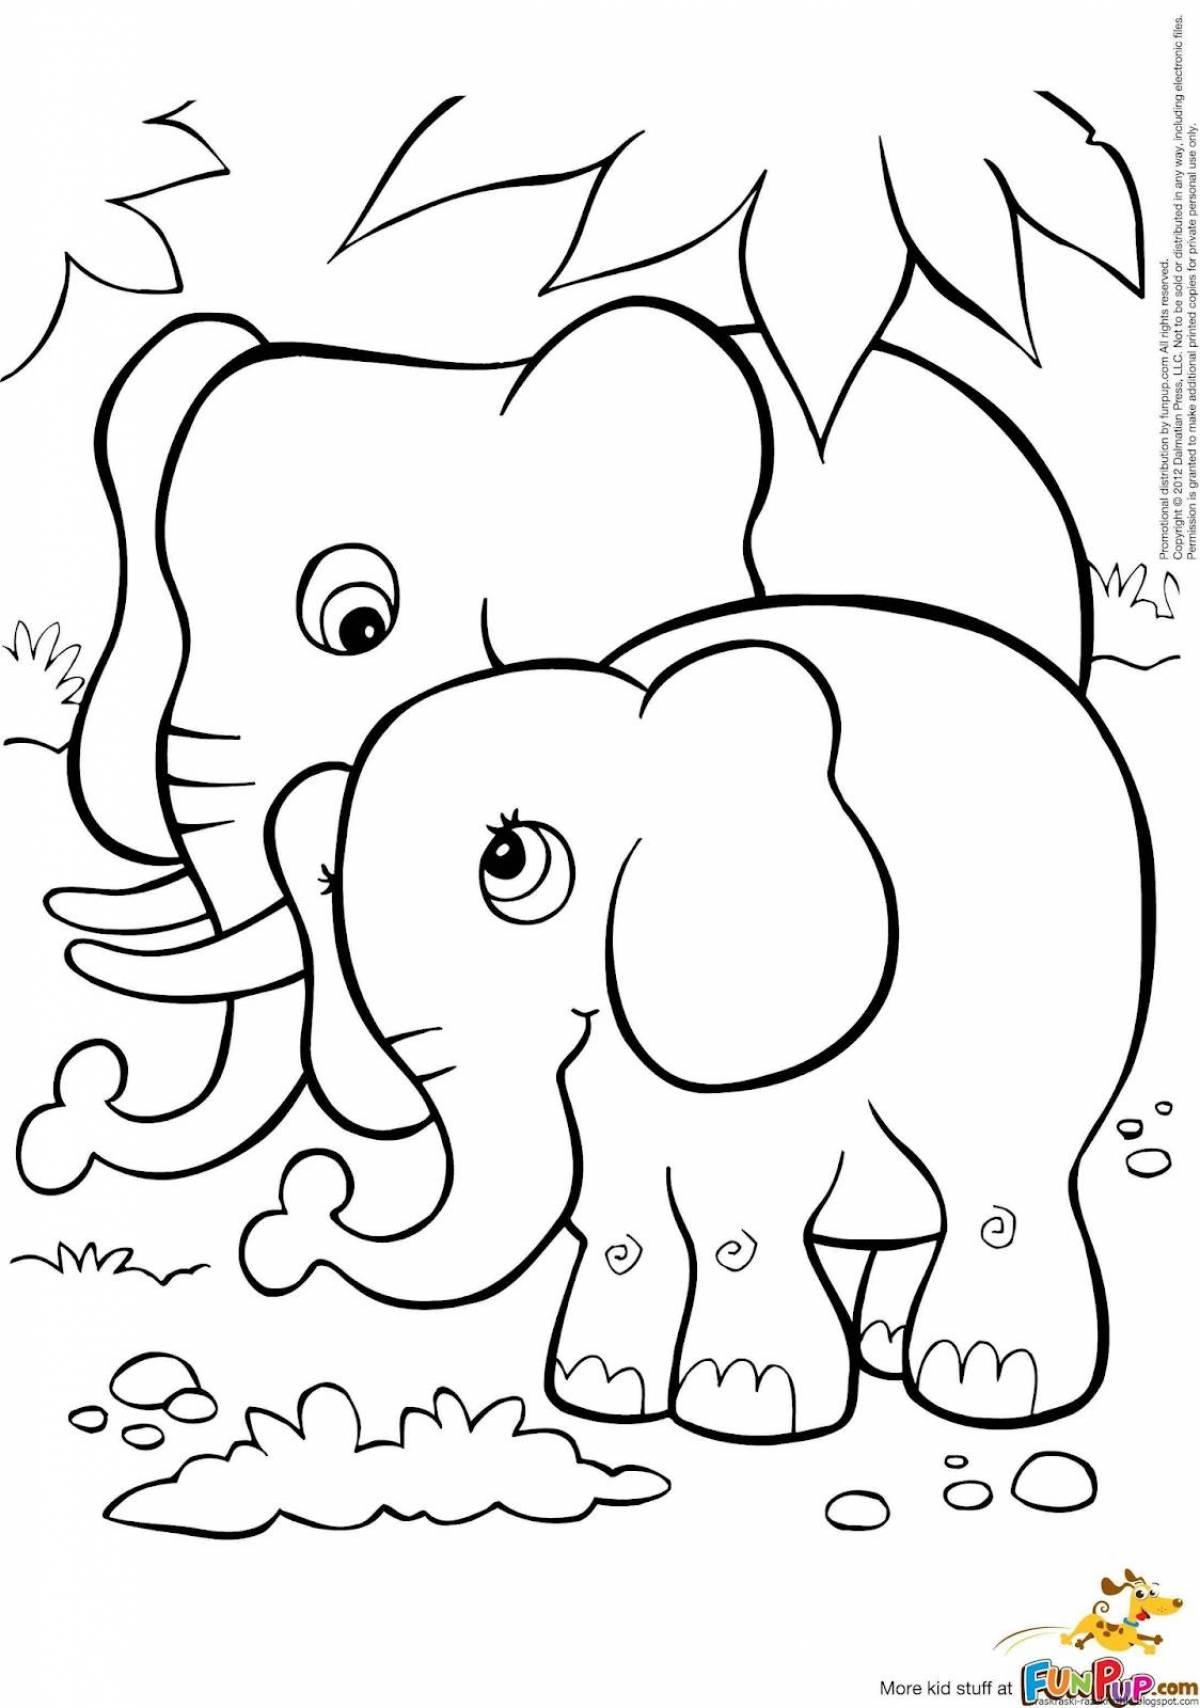 Величественный слон раскраски для детей